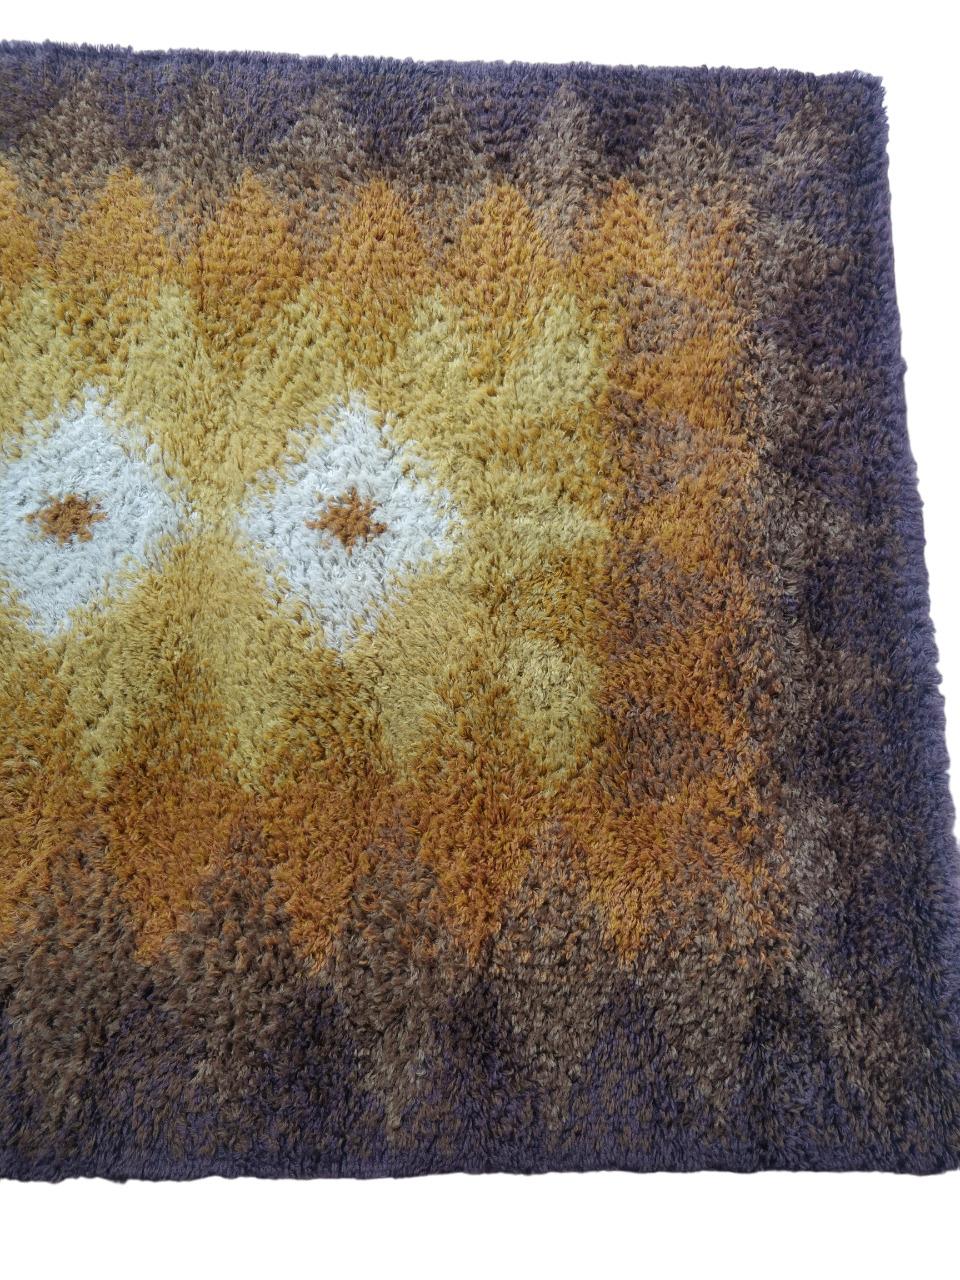 Dieser Teppich, der in Dänemark in der Rya-Webtechnik hergestellt wird, ist ein Ausdruck nordischen Designs. Es ist ganz aus reiner Wolle gefertigt und in verschiedenen Beige- und Brauntönen gehalten. Ein Rautenmuster in der Mitte auf hellem Grund